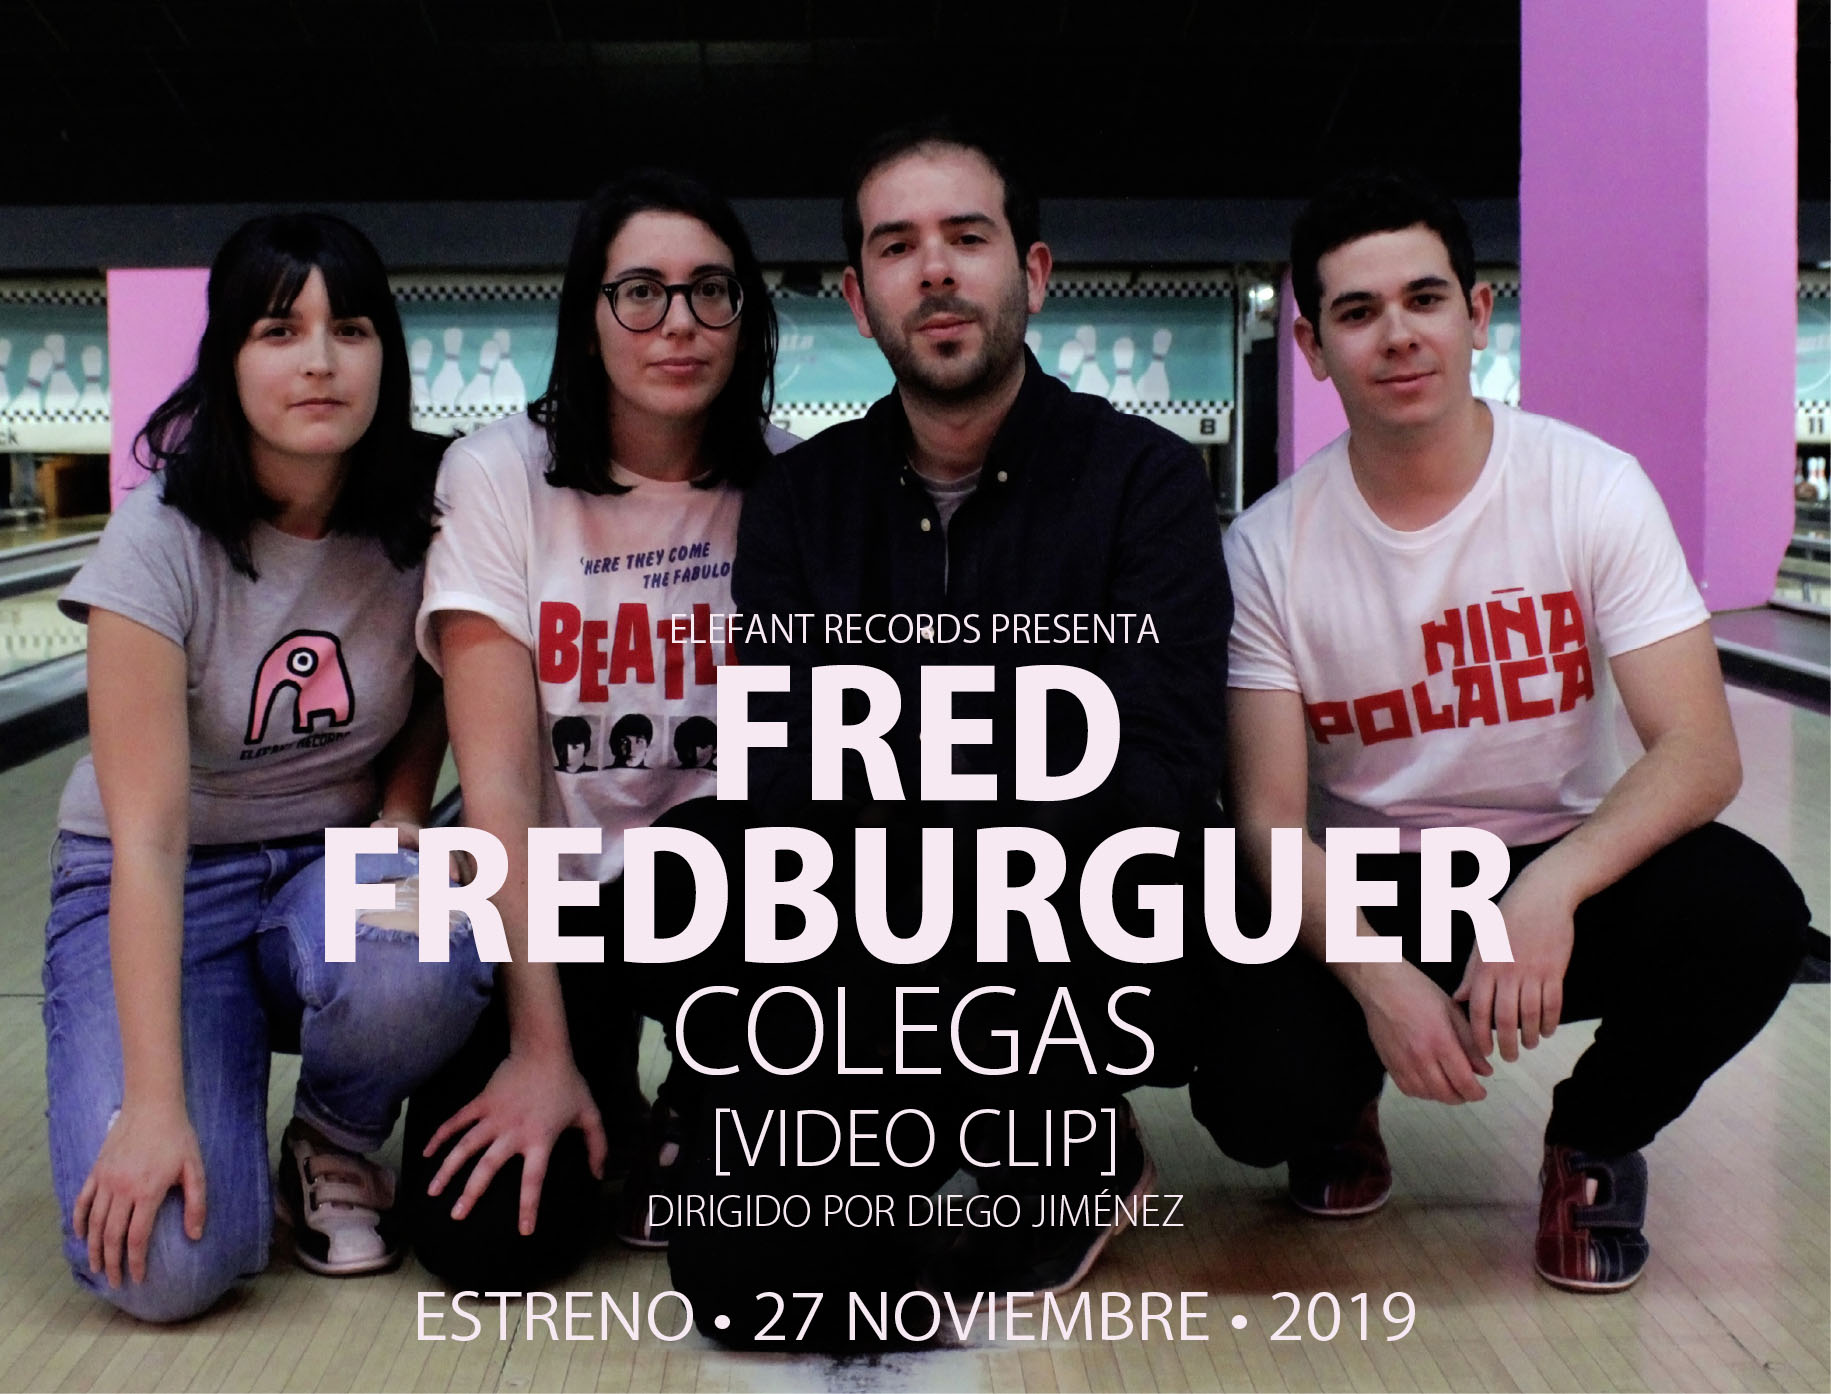 Fred Fred Burguer "Colegas" Single Digital